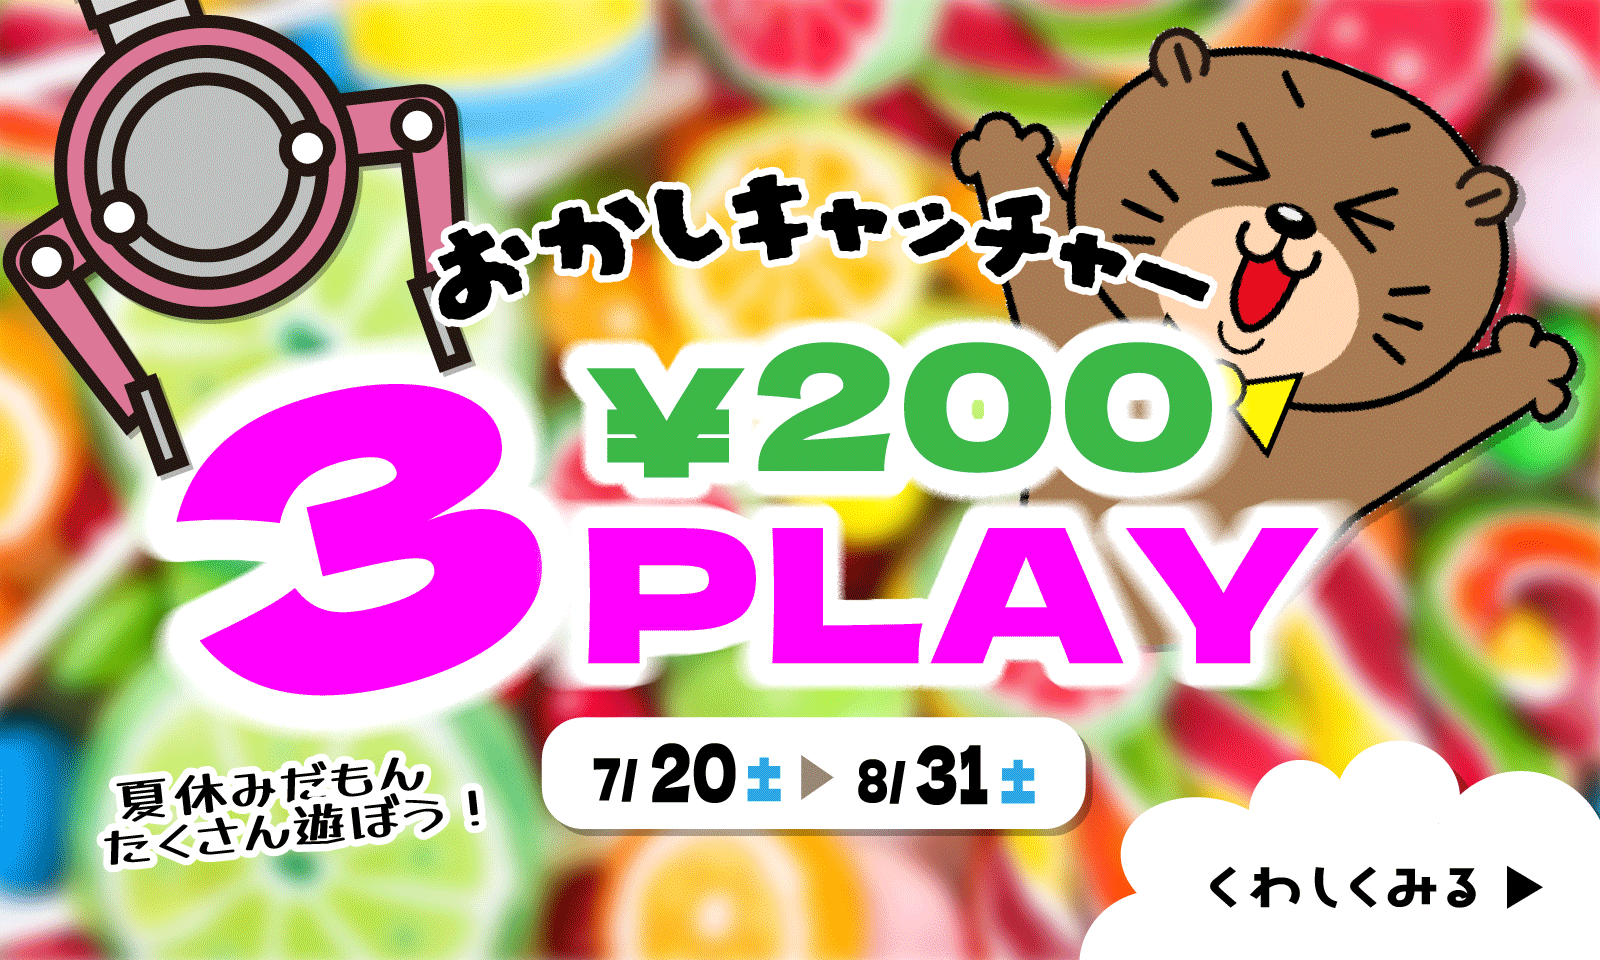 飲食キャッチャー200円3PLAY